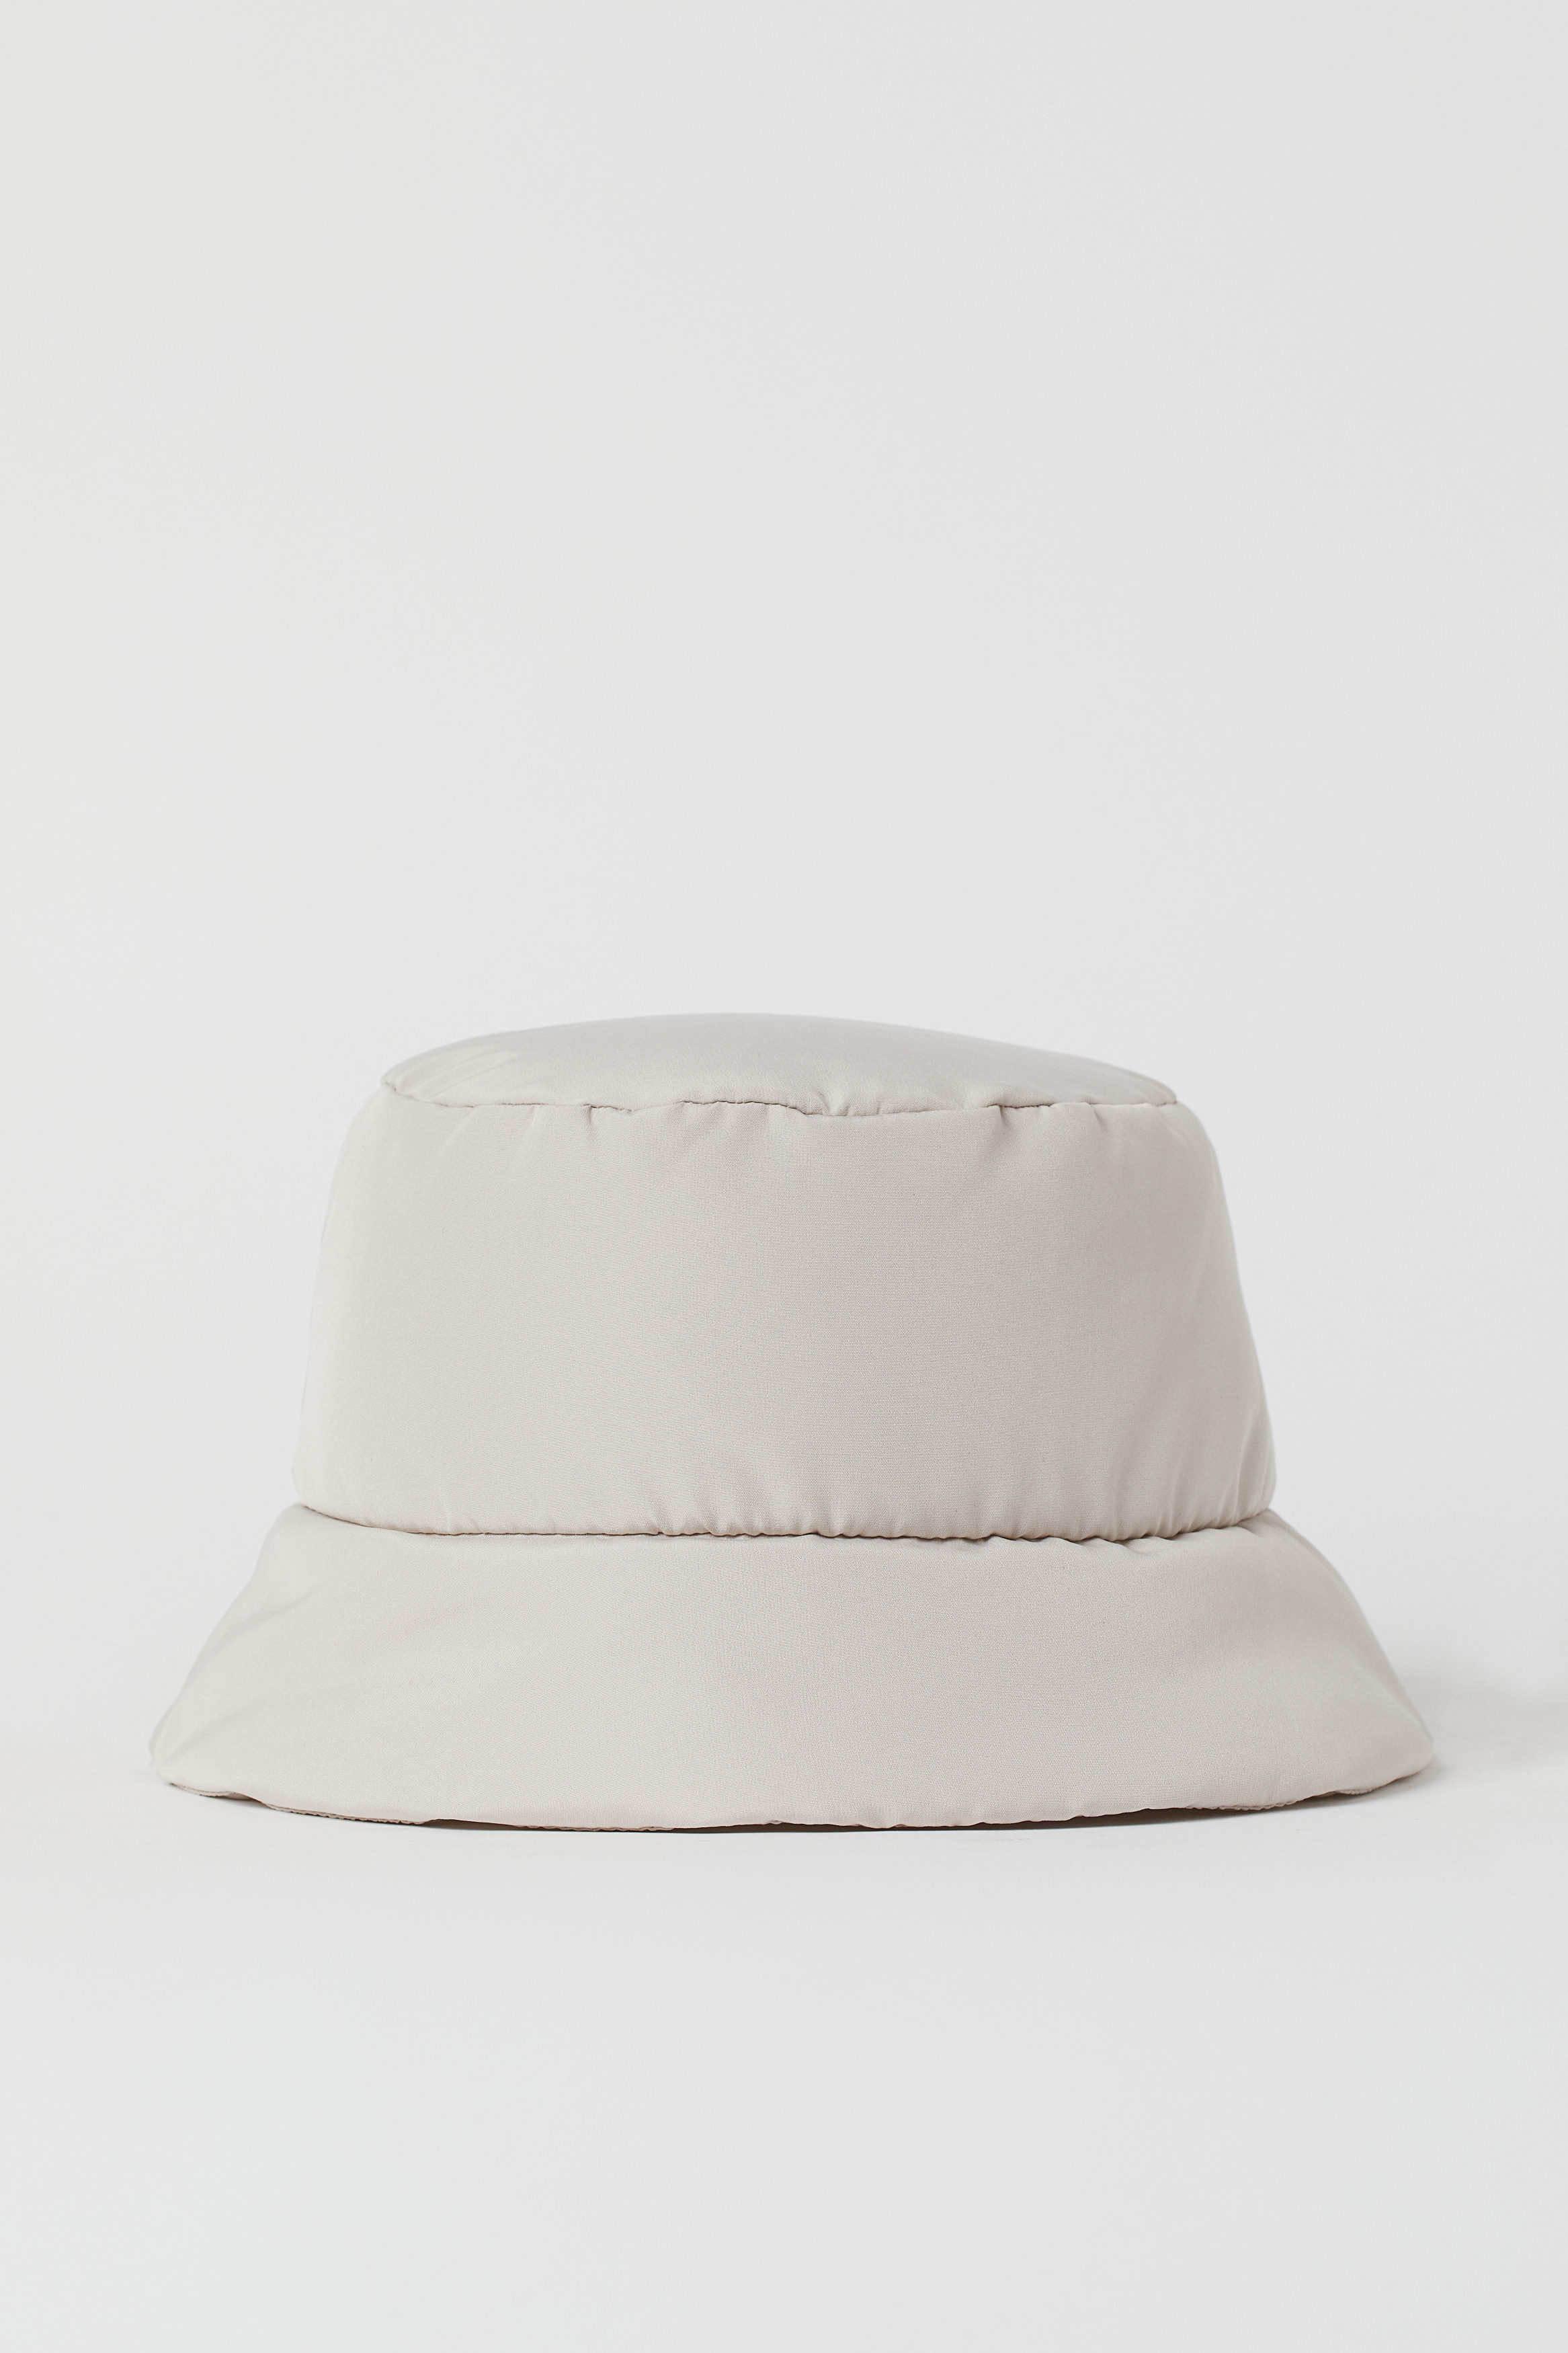 H&M Accessoires Mützen Bucket Hat aus Baumwolltwill Hüte & Caps Hüte 